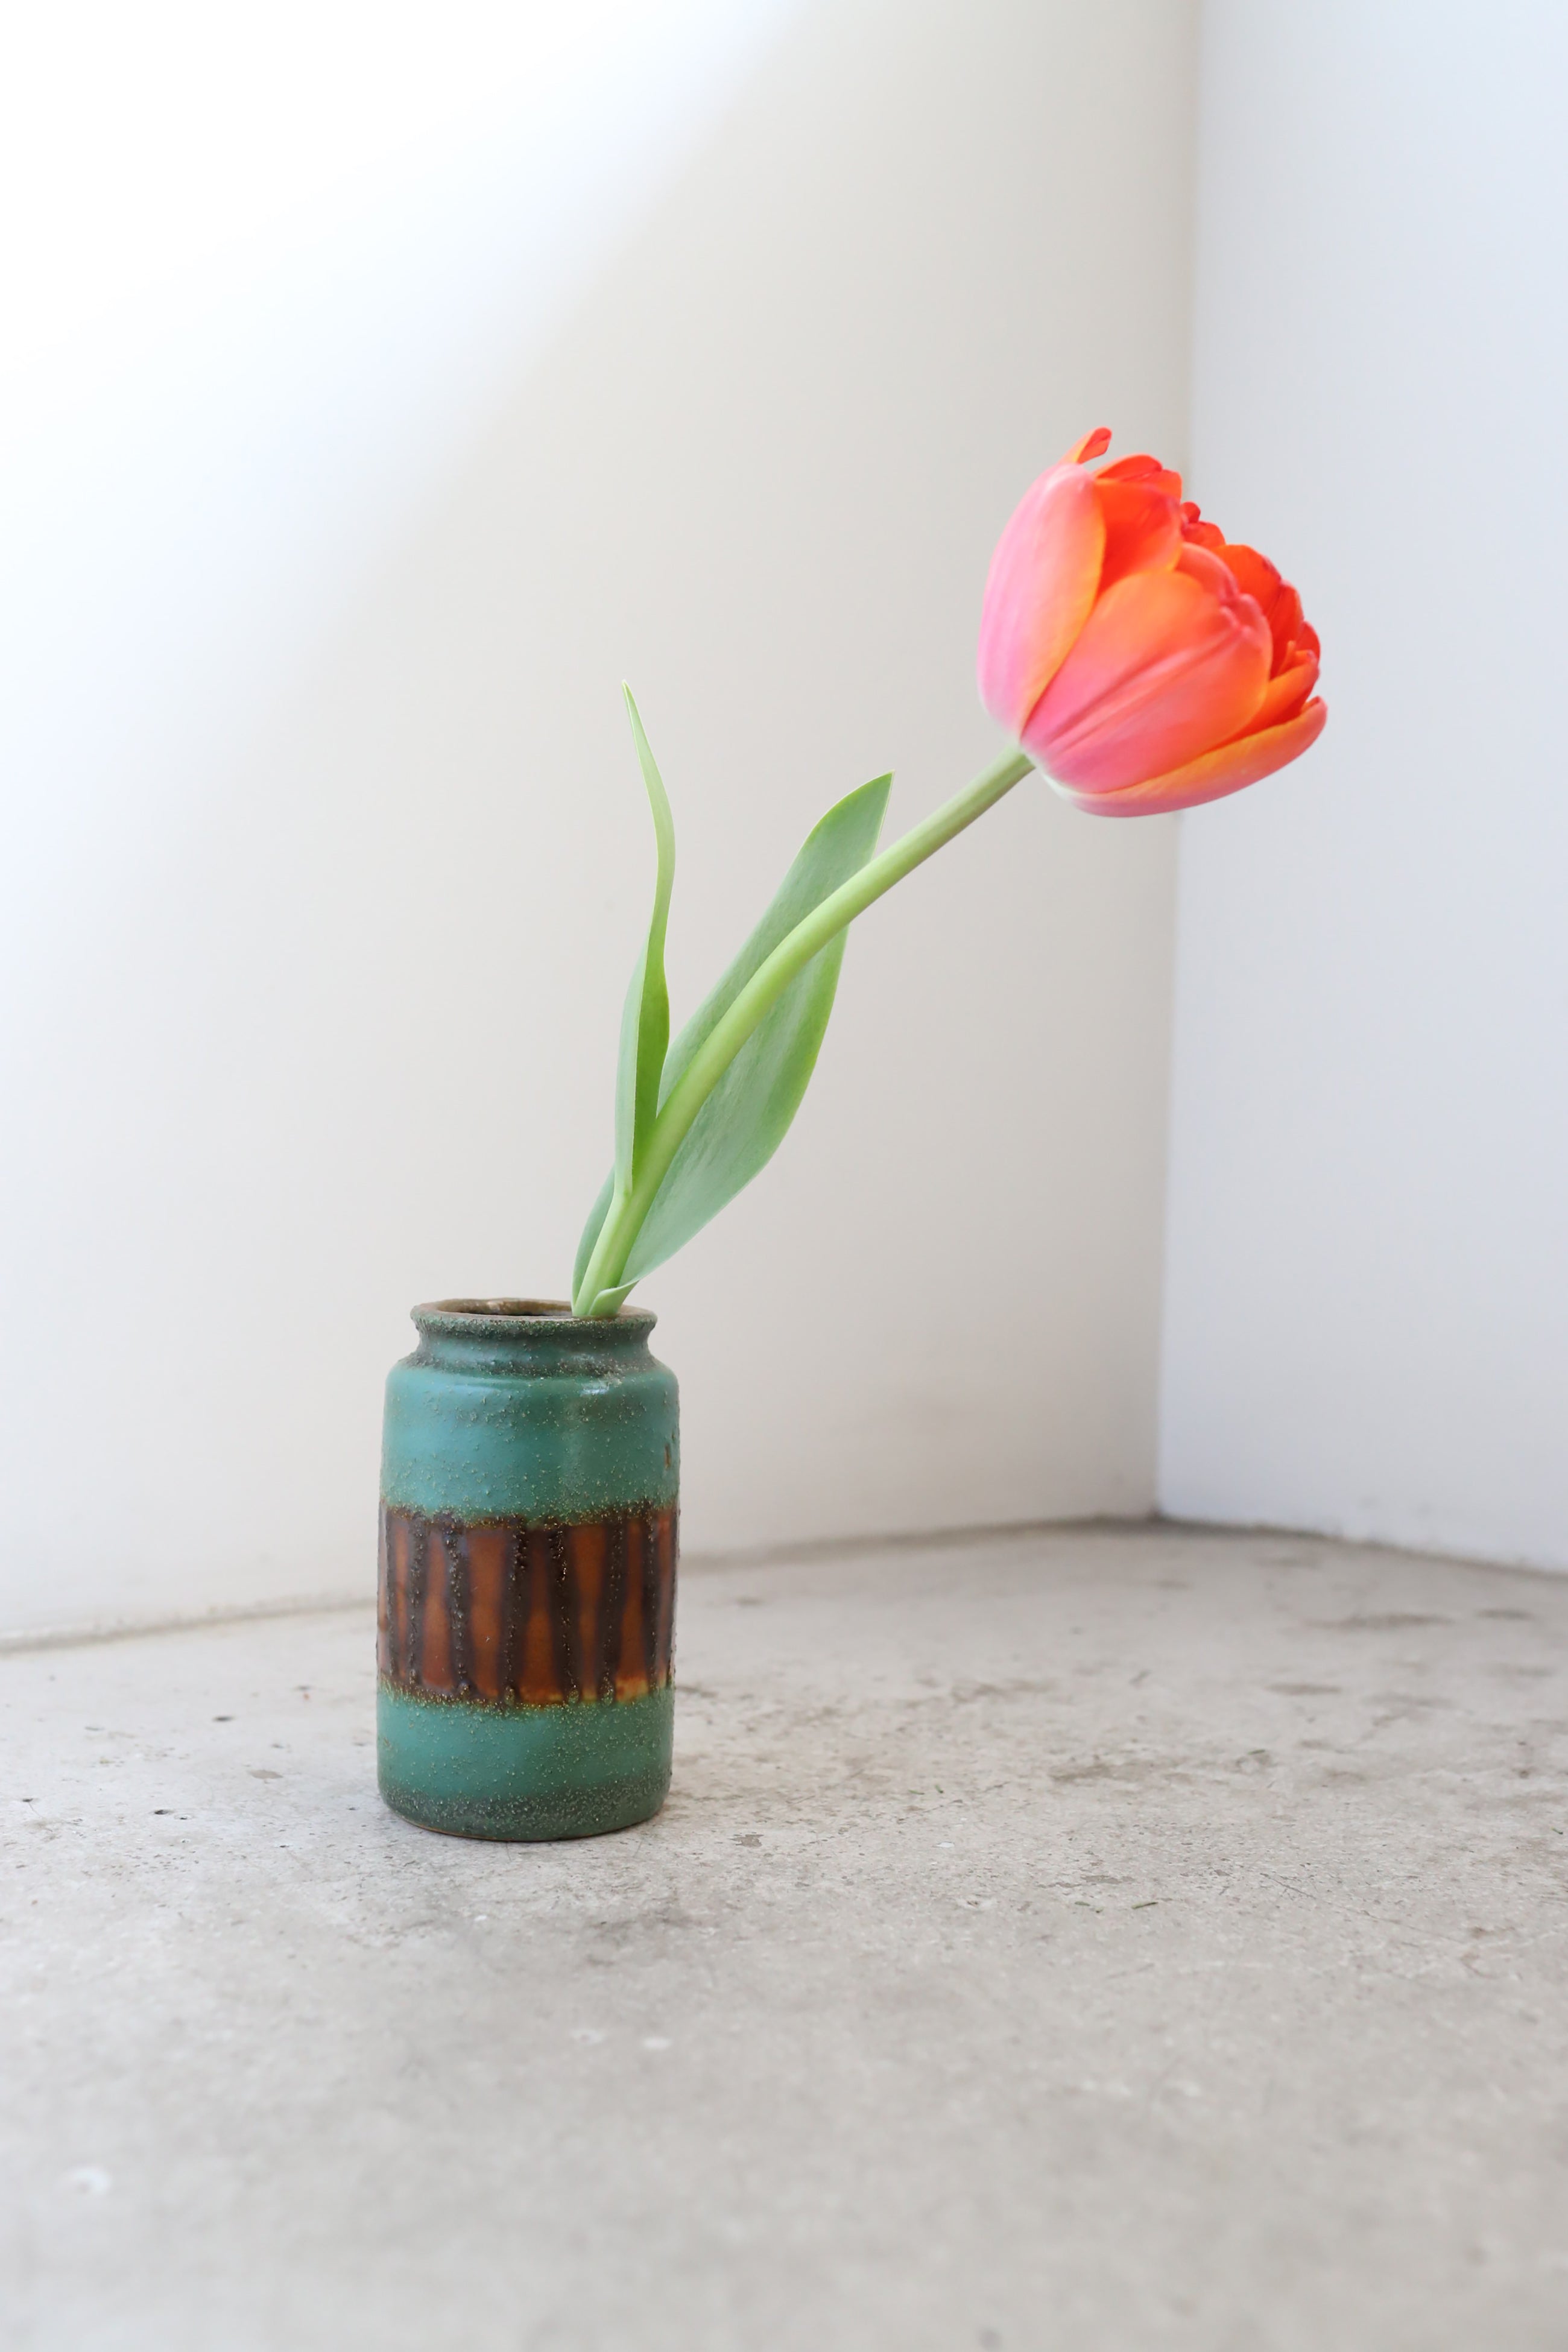 February Vase #4